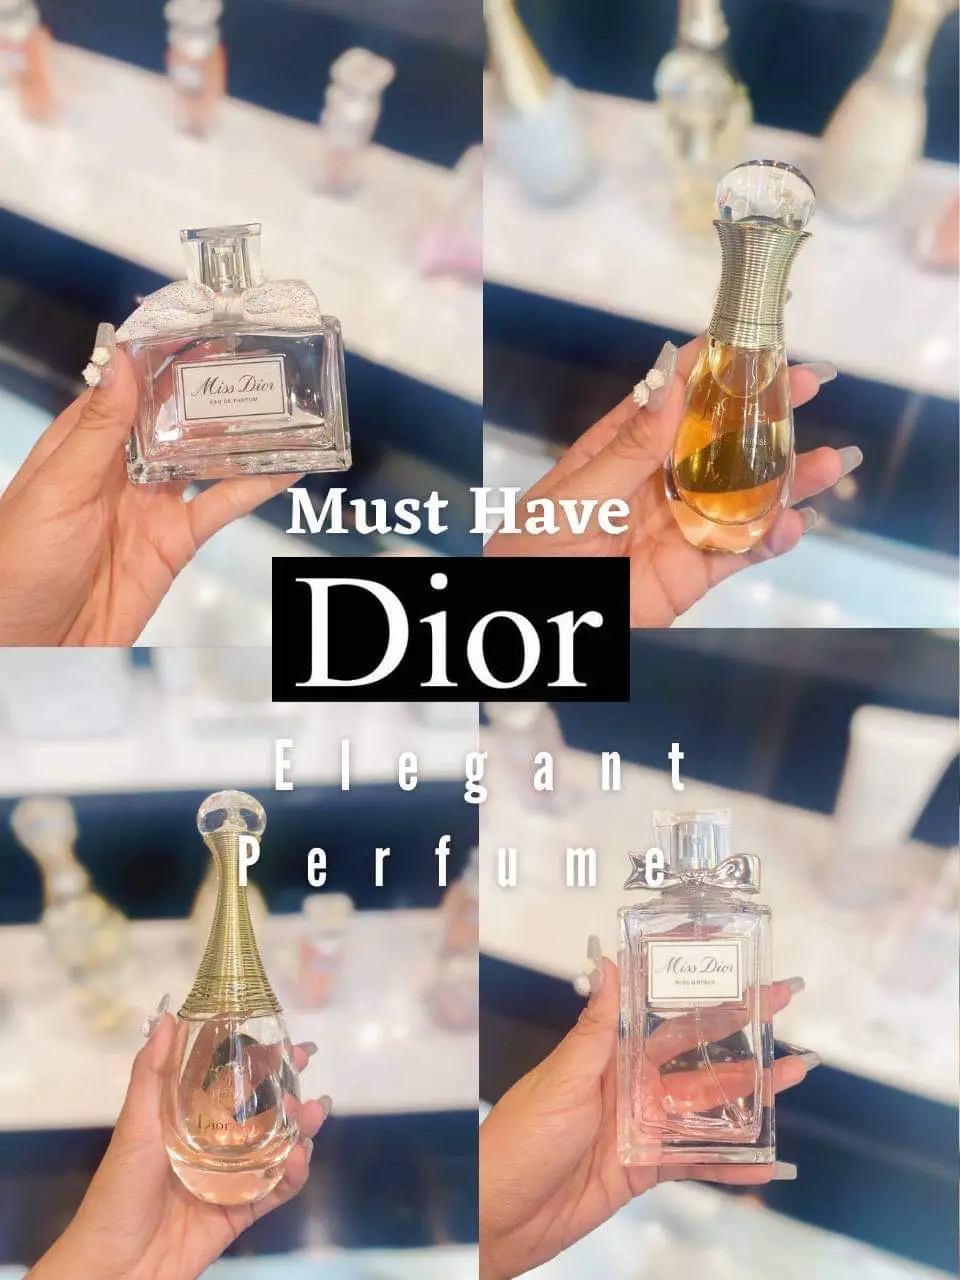 Dior – Miss Dior – Spritz